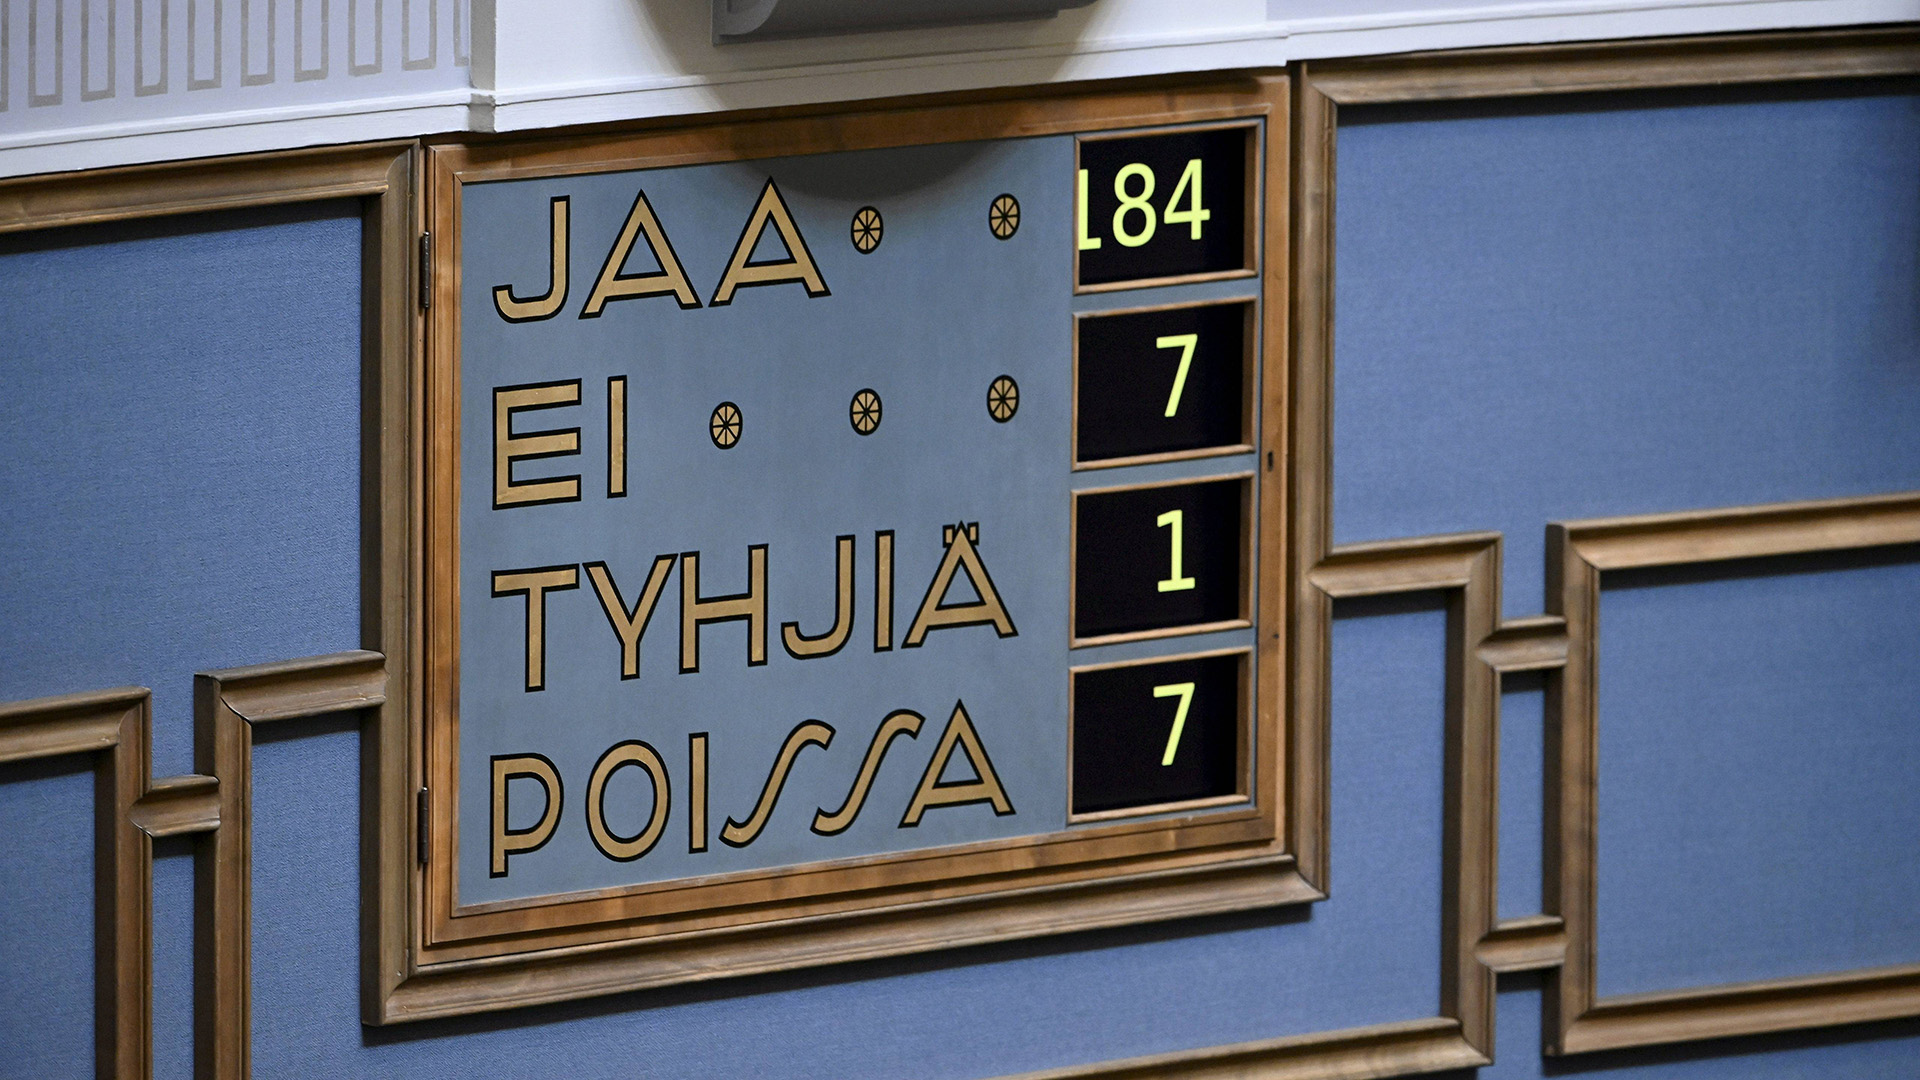 Das Ergebnis der NATO-Abstimmung im Parlament in Helsinki (Finnland).